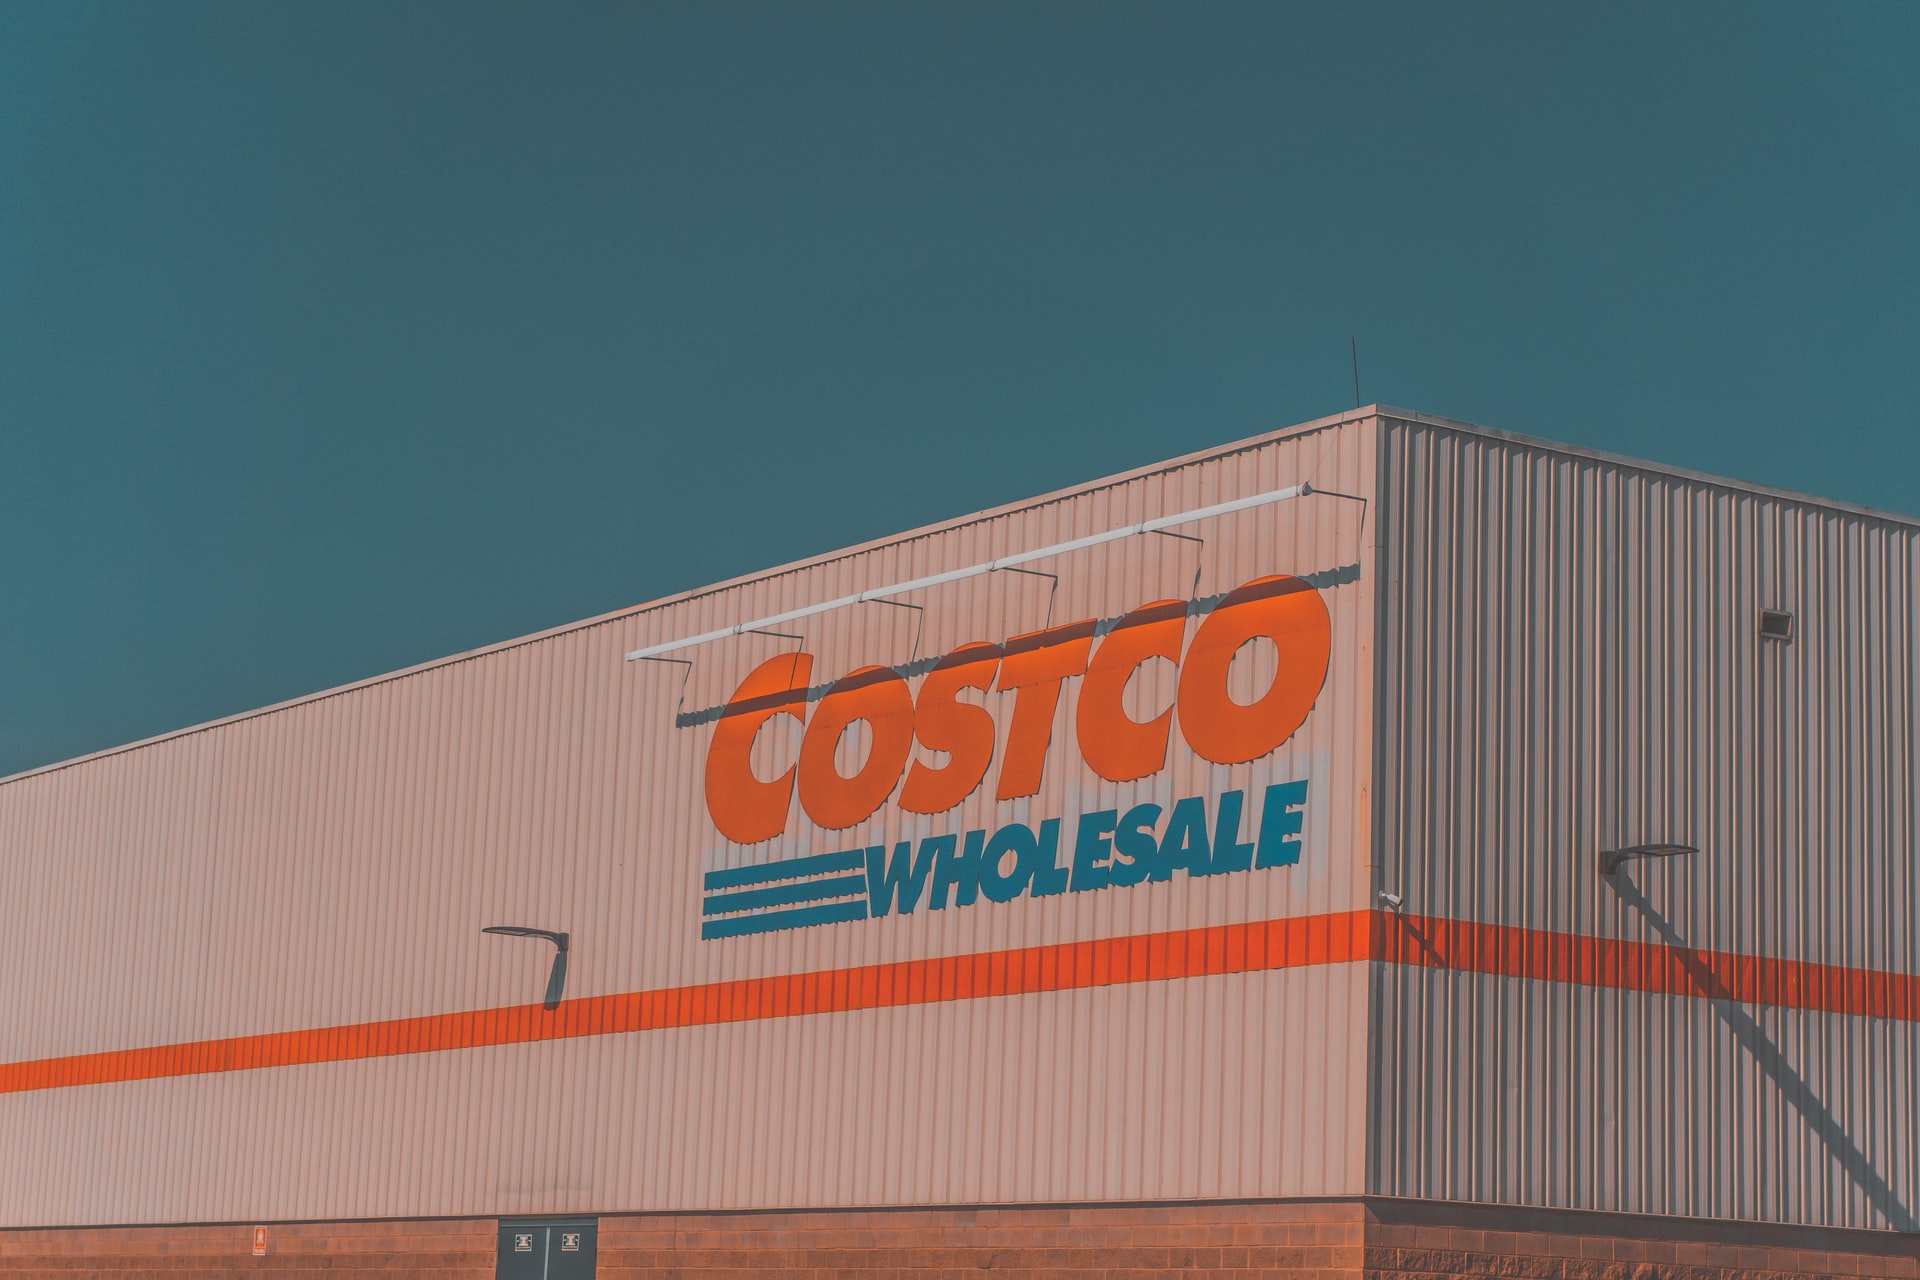 A Costco Wholasale, mint a világ ötödik legnagyobb kiskereskedője